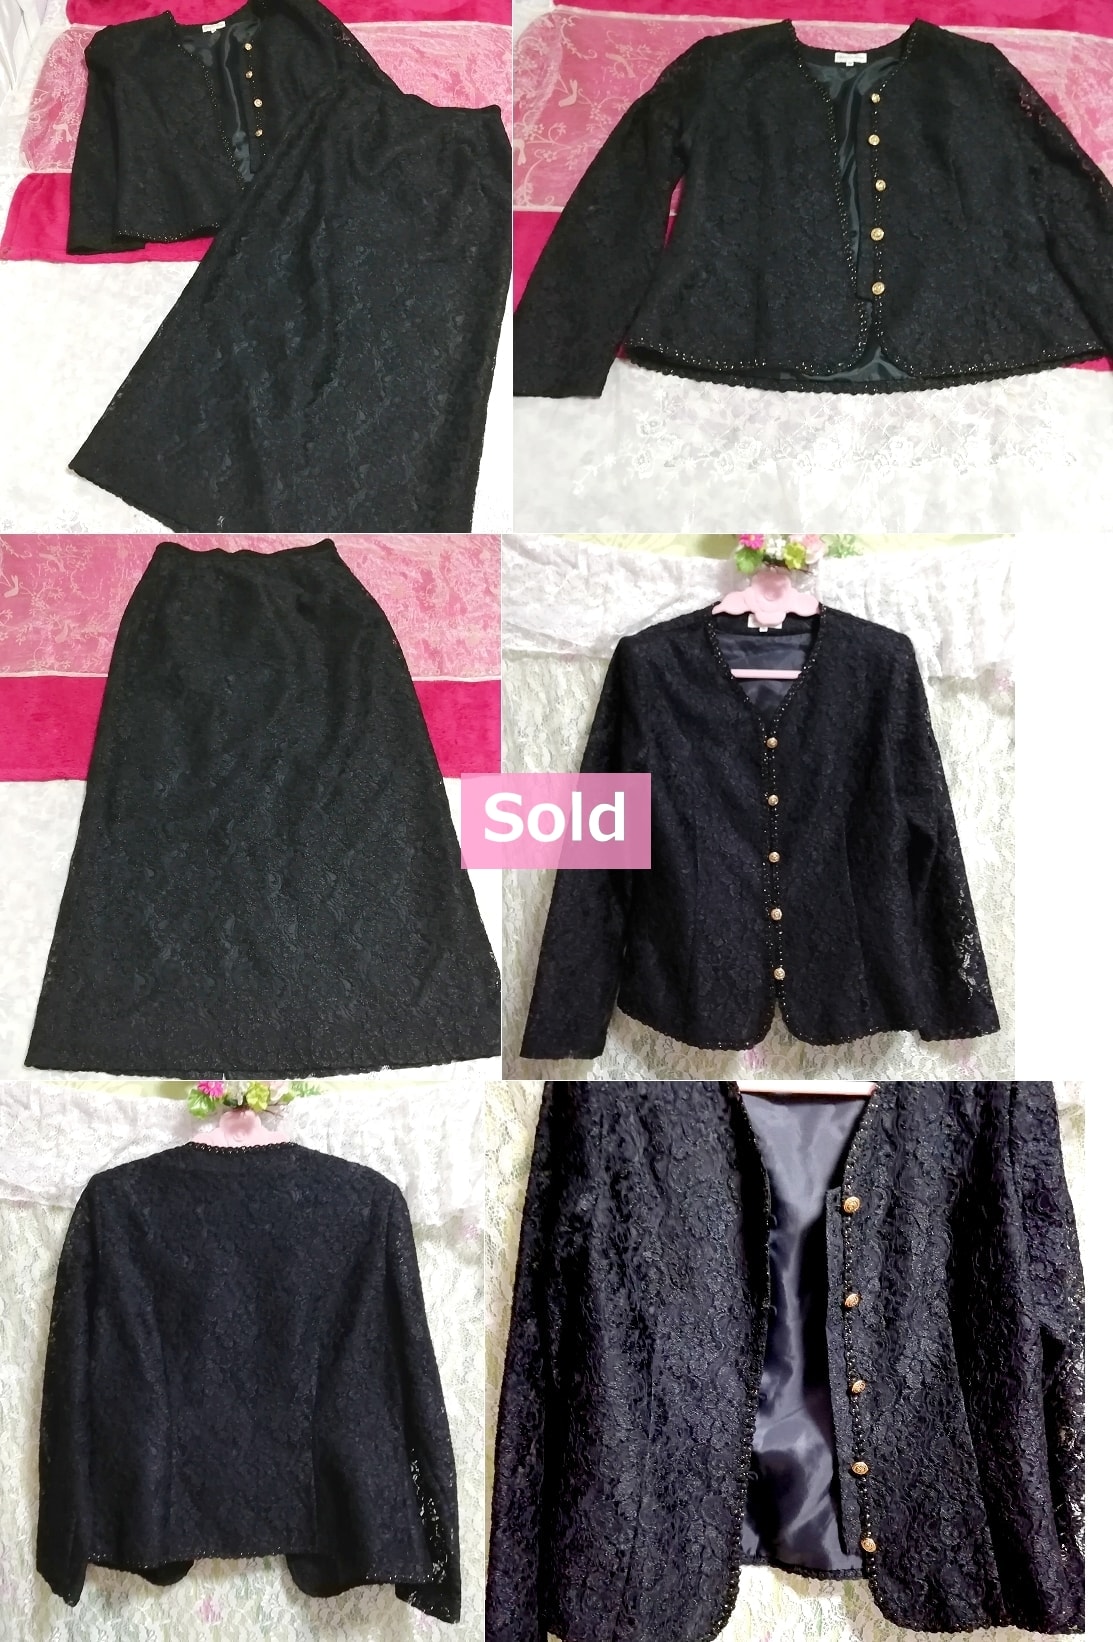 黒ブラックレースジャケットスカート2ピーススーツセット Black lace jacket skirt 2 piece suit set